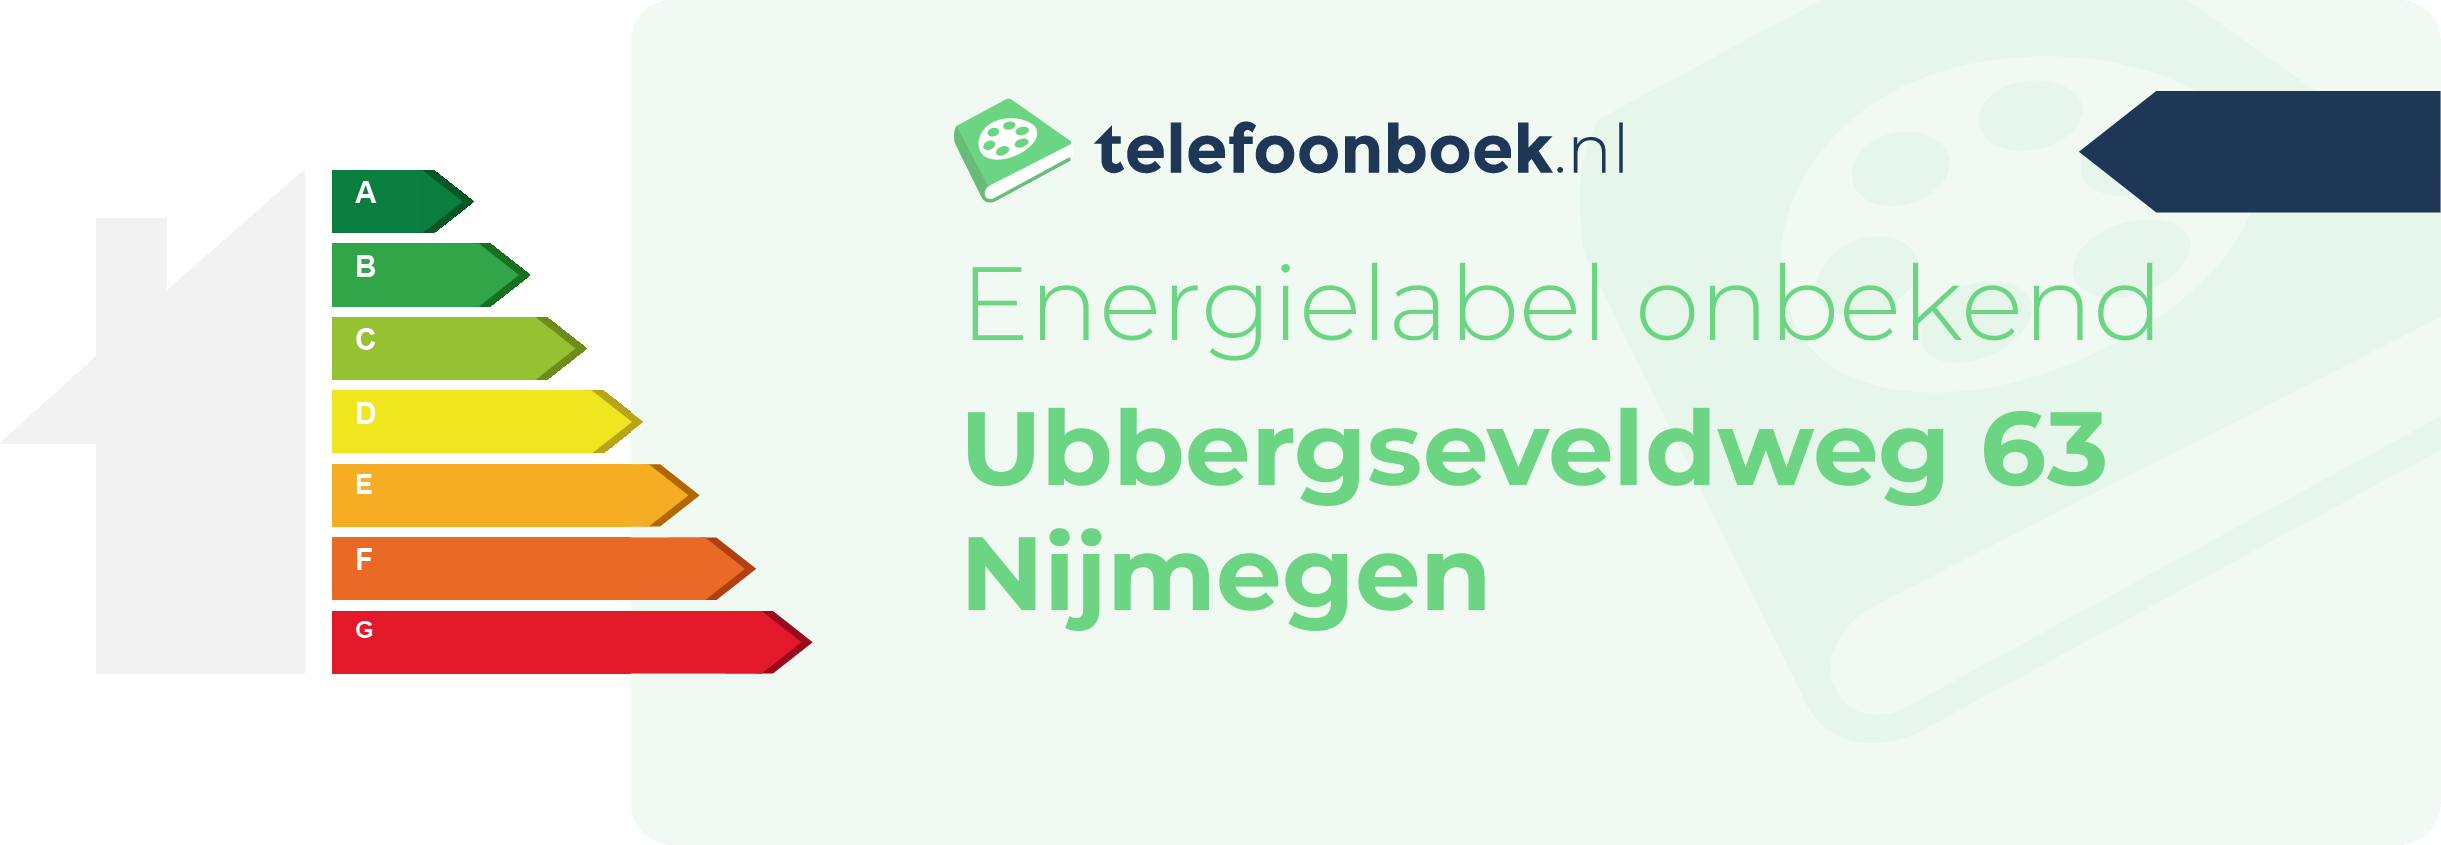 Energielabel Ubbergseveldweg 63 Nijmegen